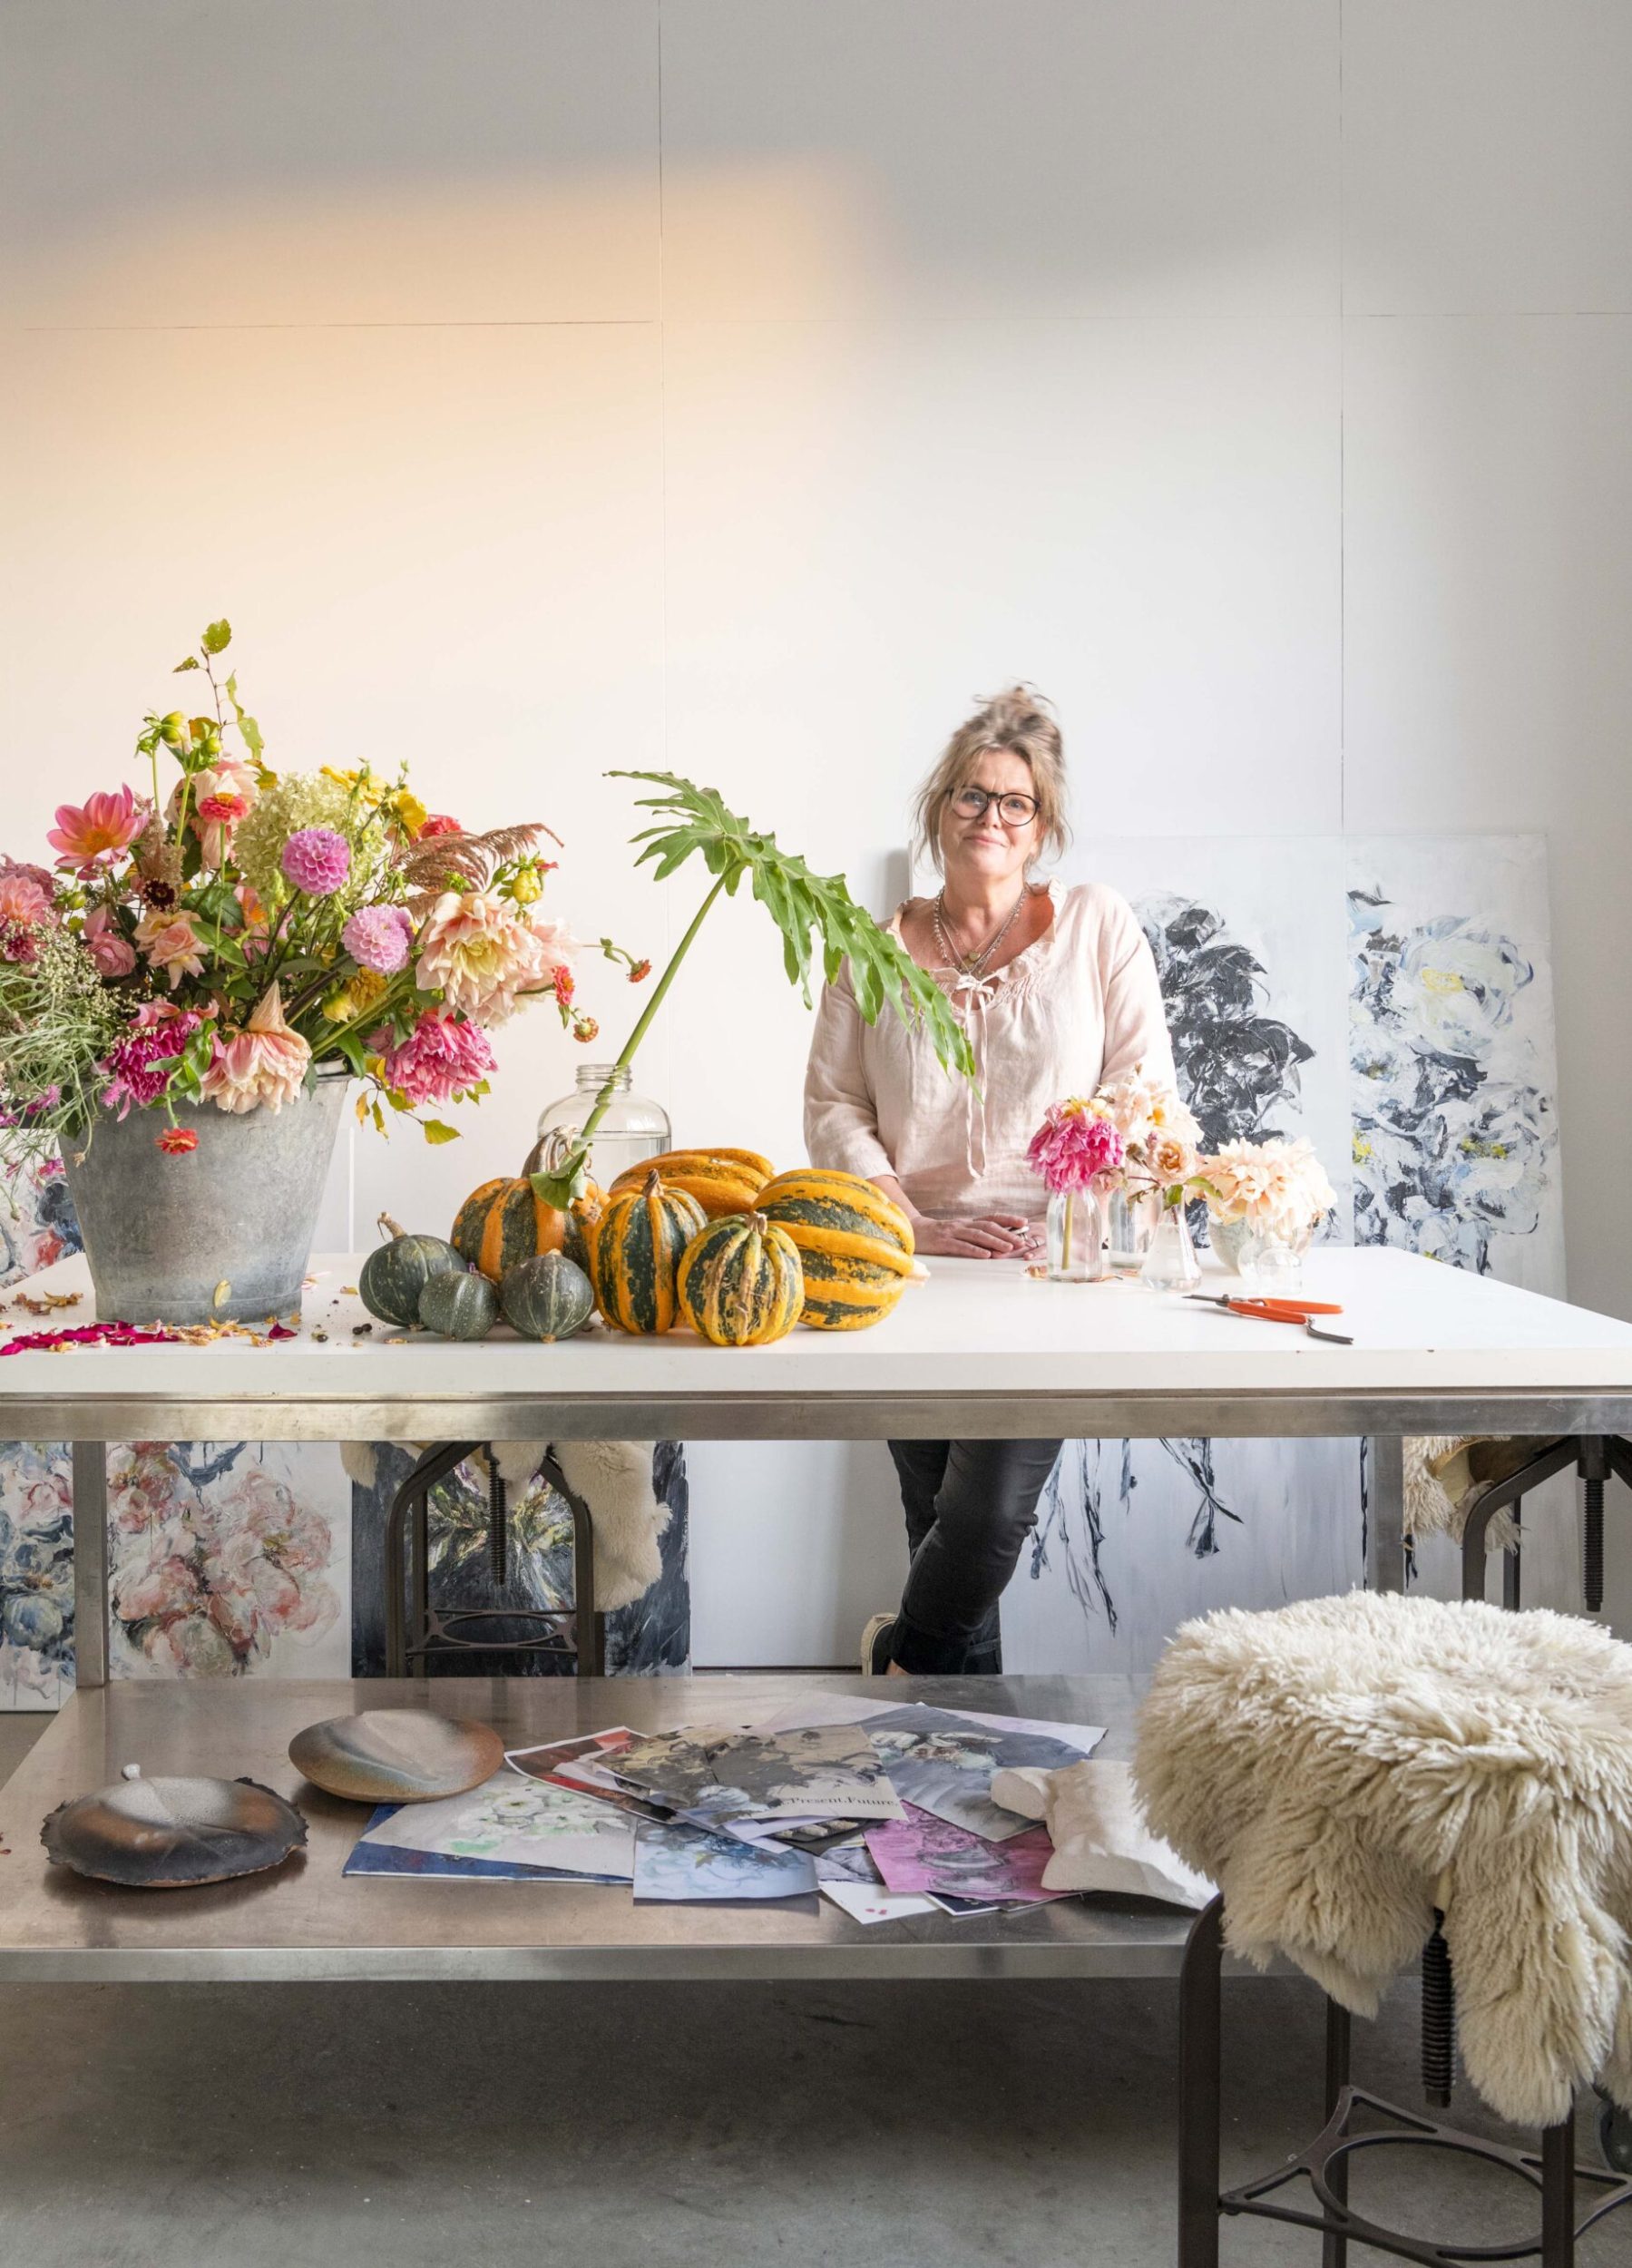 Lizzie Beere in her art studio surrounded by her art